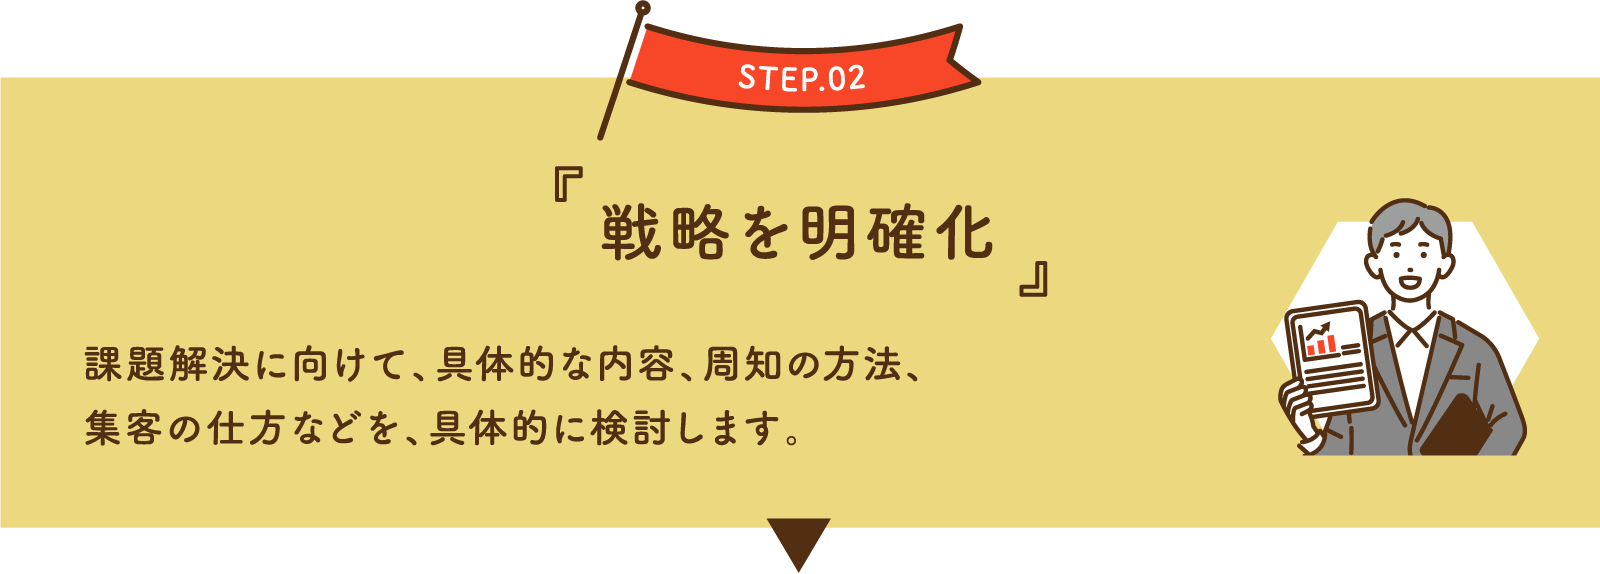 STEP.02 ［戦略を明確化］ 課題解決に向けて、具体的な内容、周知の方法、集客の仕方などを、具体的に検討します。